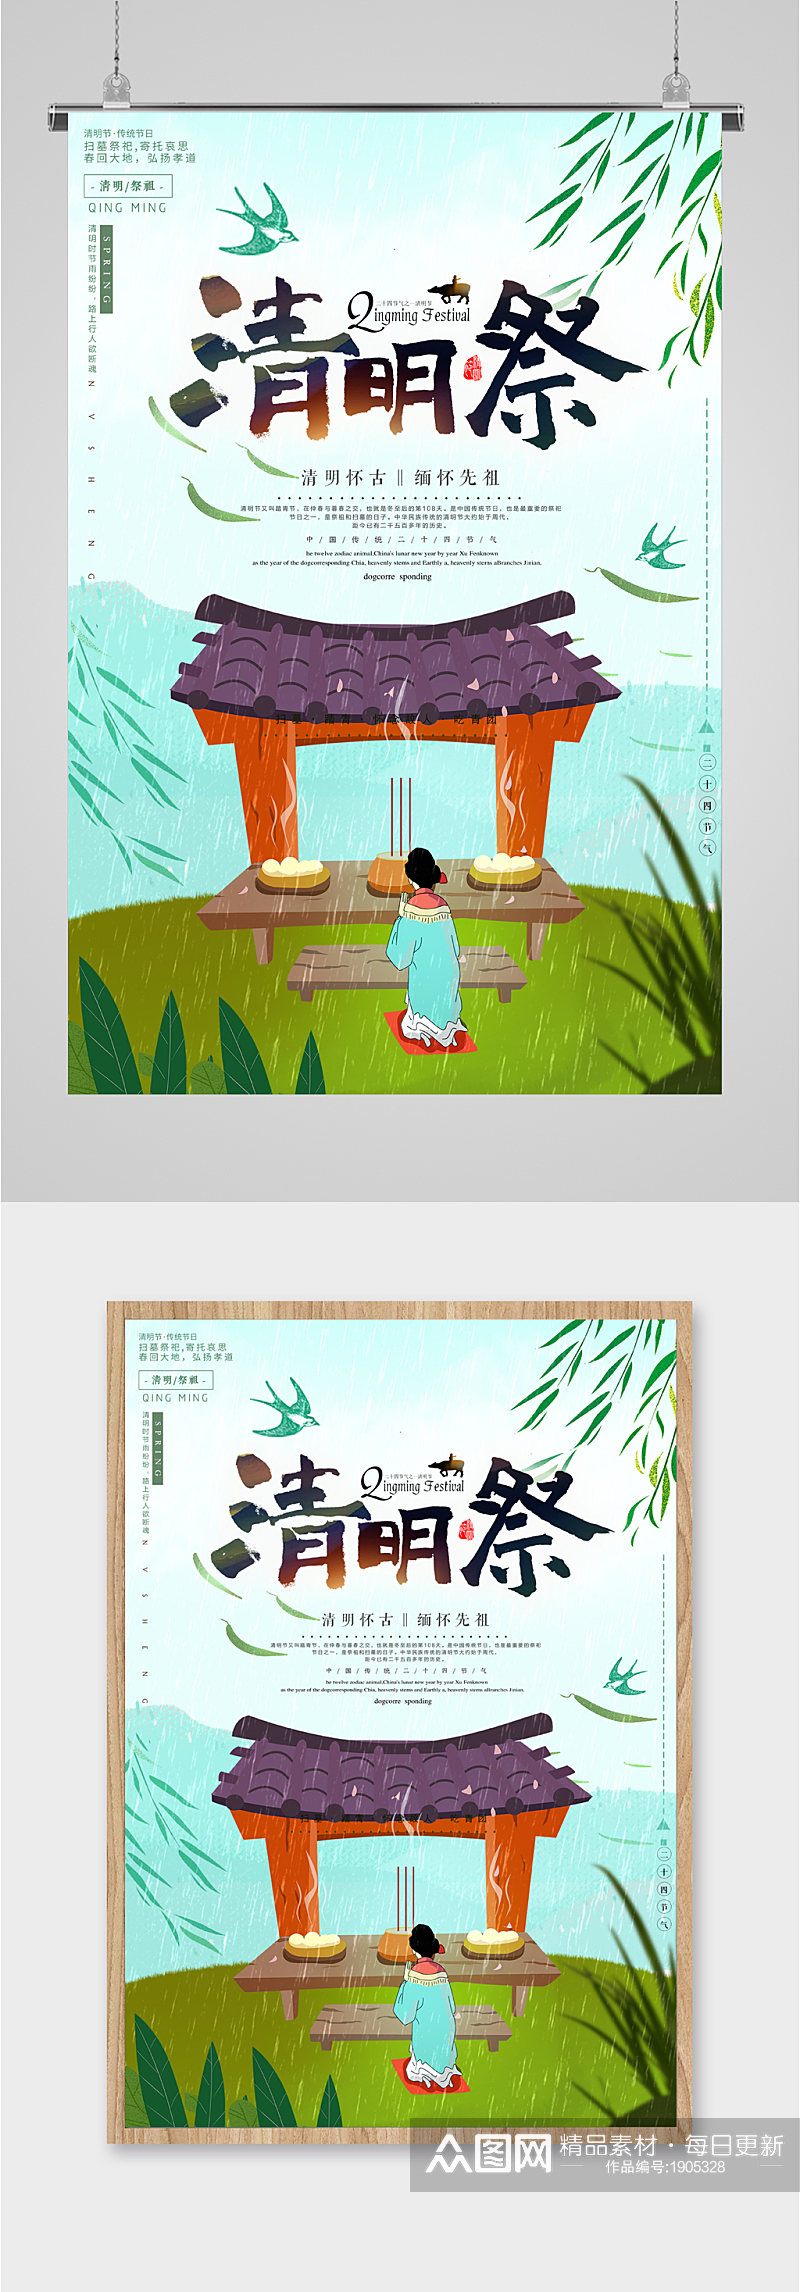 清明祭中国传统节日海报素材